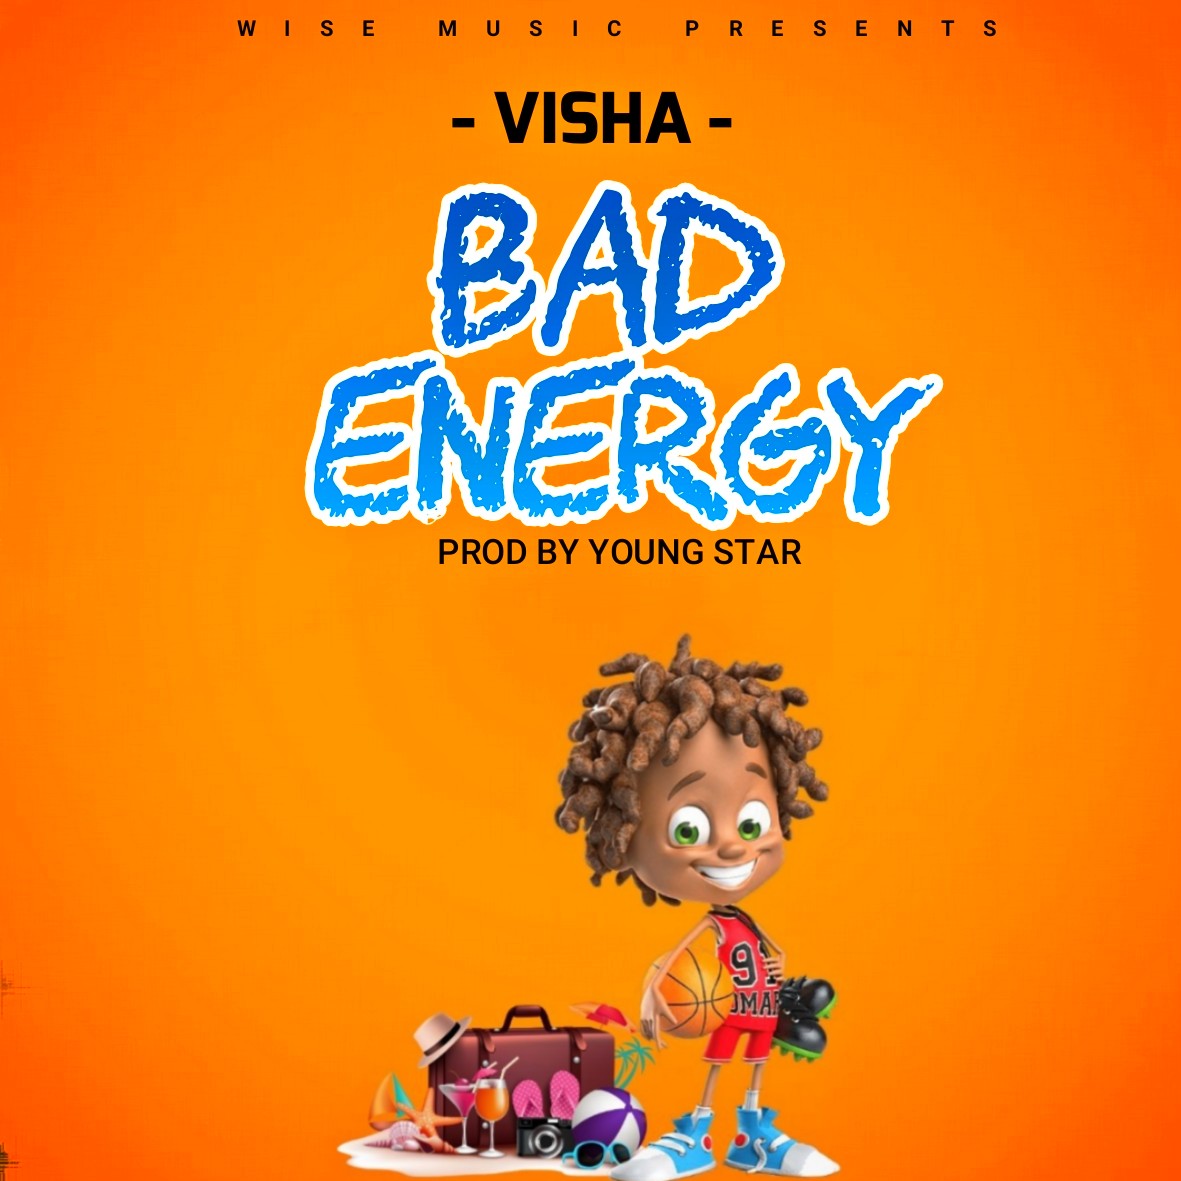 Visha-Bad-energy